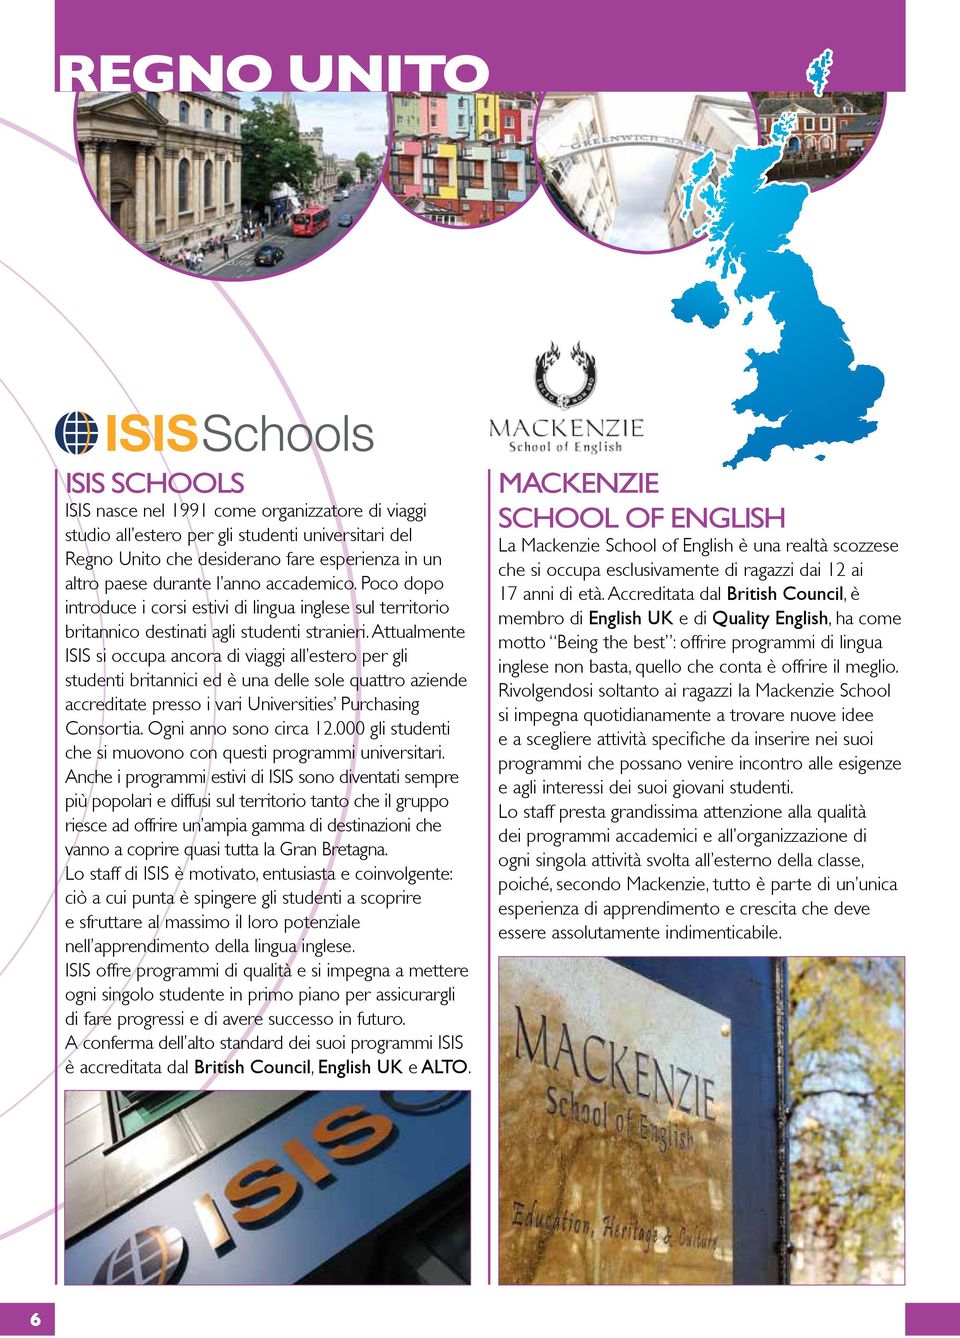 Attualmente ISIS si occupa ancora di viaggi all estero per gli studenti britannici ed è una delle sole quattro aziende accreditate presso i vari Universities Purchasing Consortia.